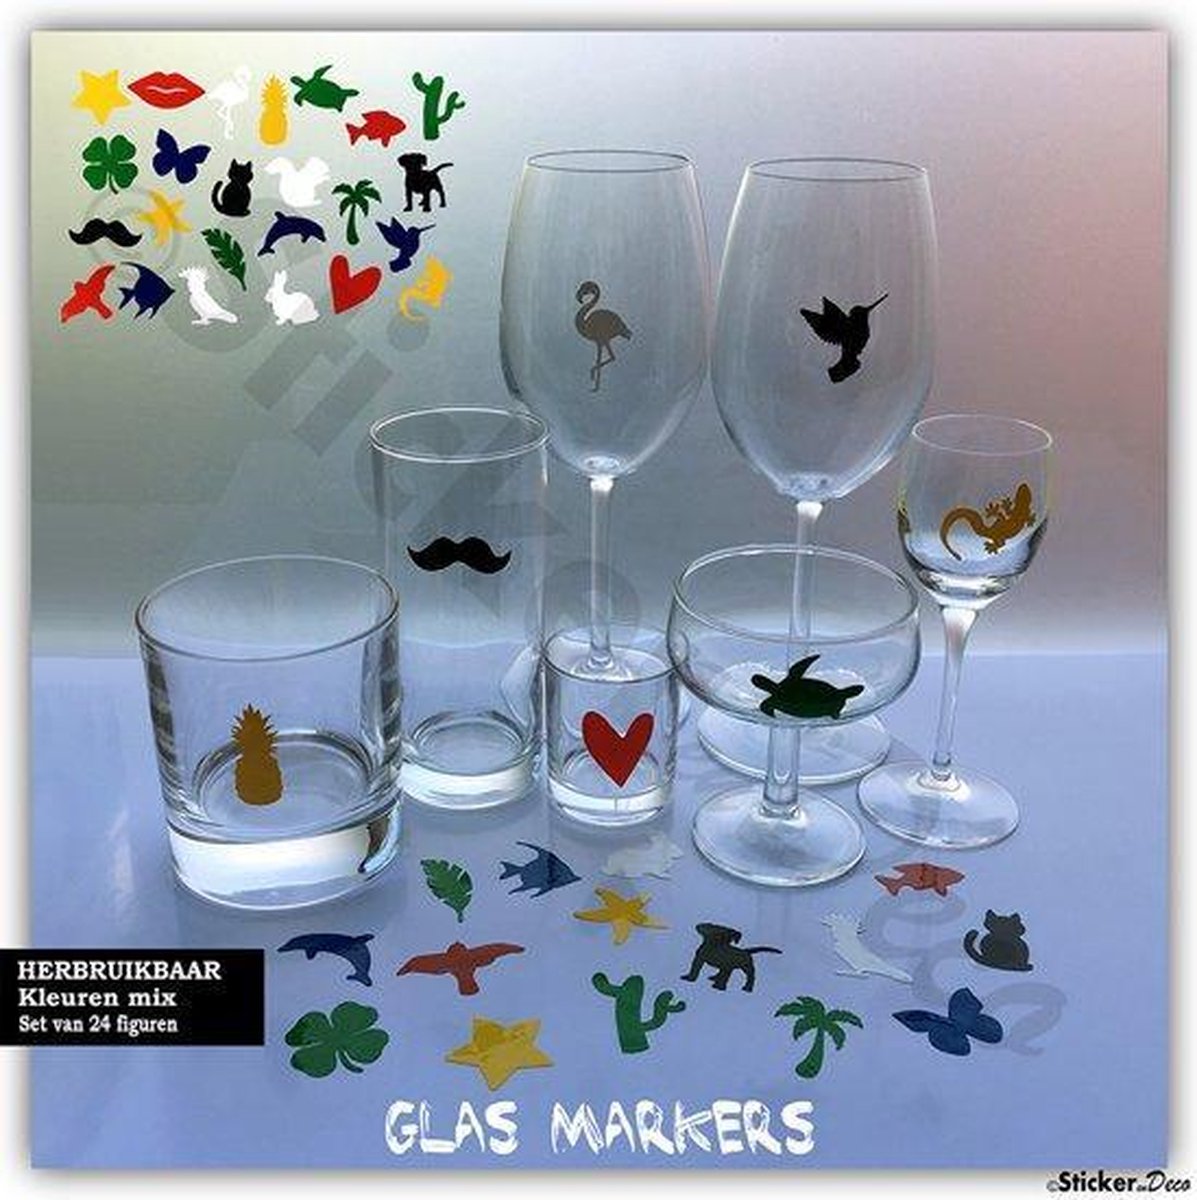 Mechanica Mammoet Trunk bibliotheek Glasmarkers - 24 stuks - Color mix | bol.com